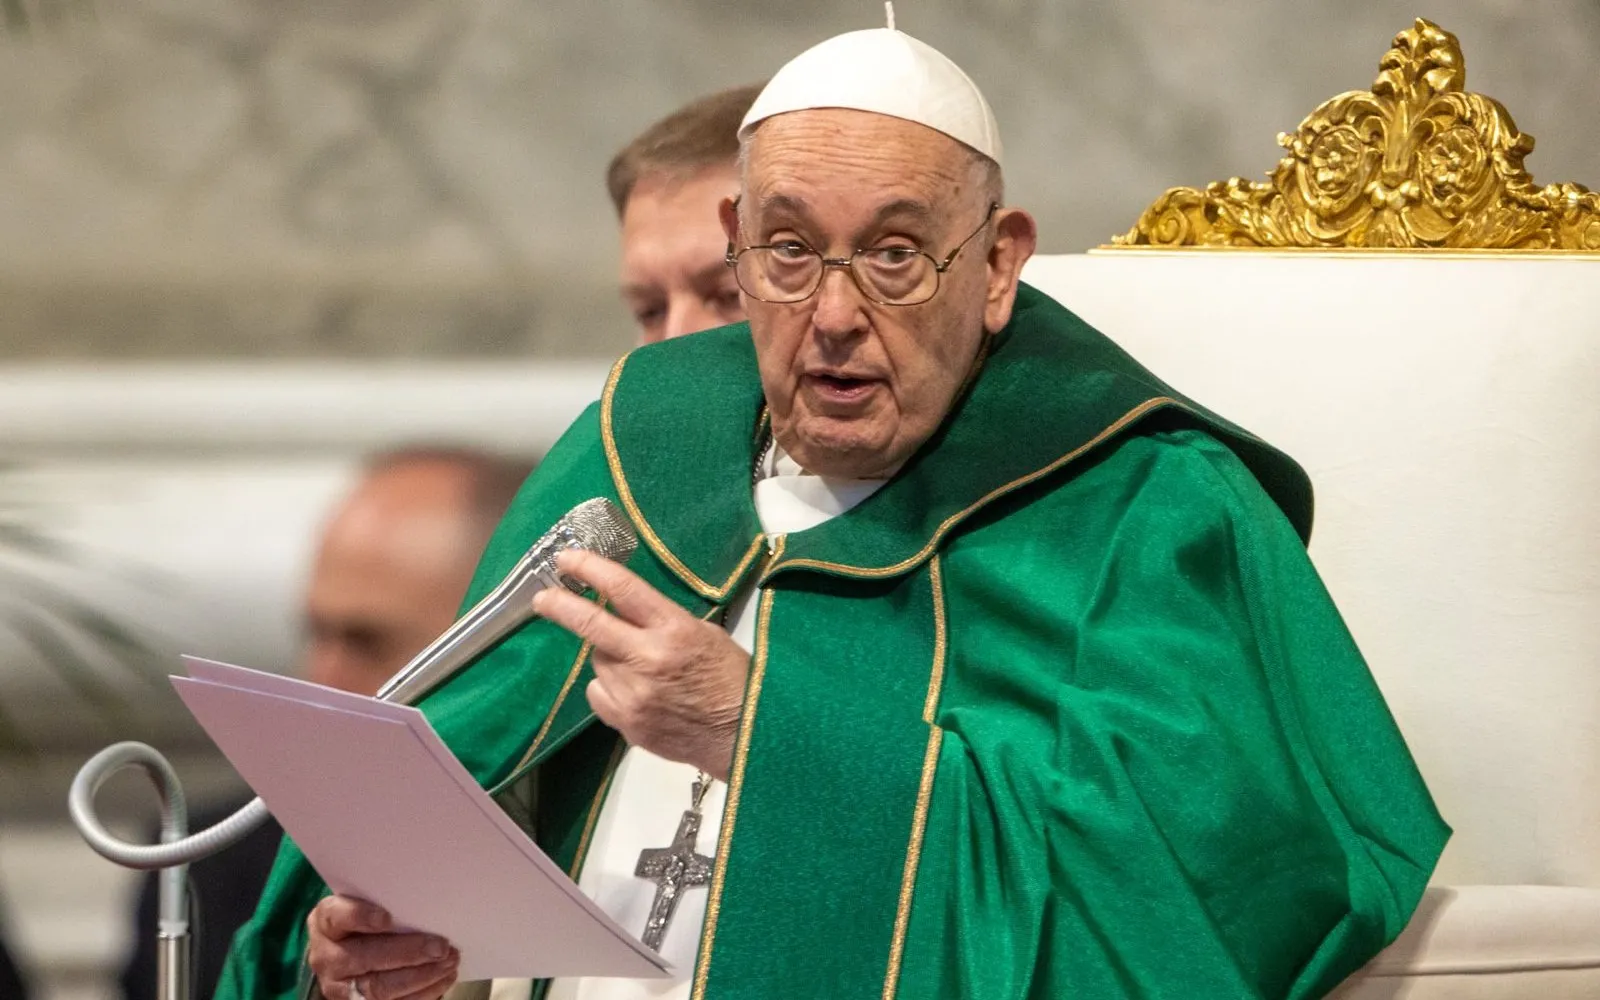 El Papa Francisco durante la Misa de la Jornada Mundial de los Pobres?w=200&h=150